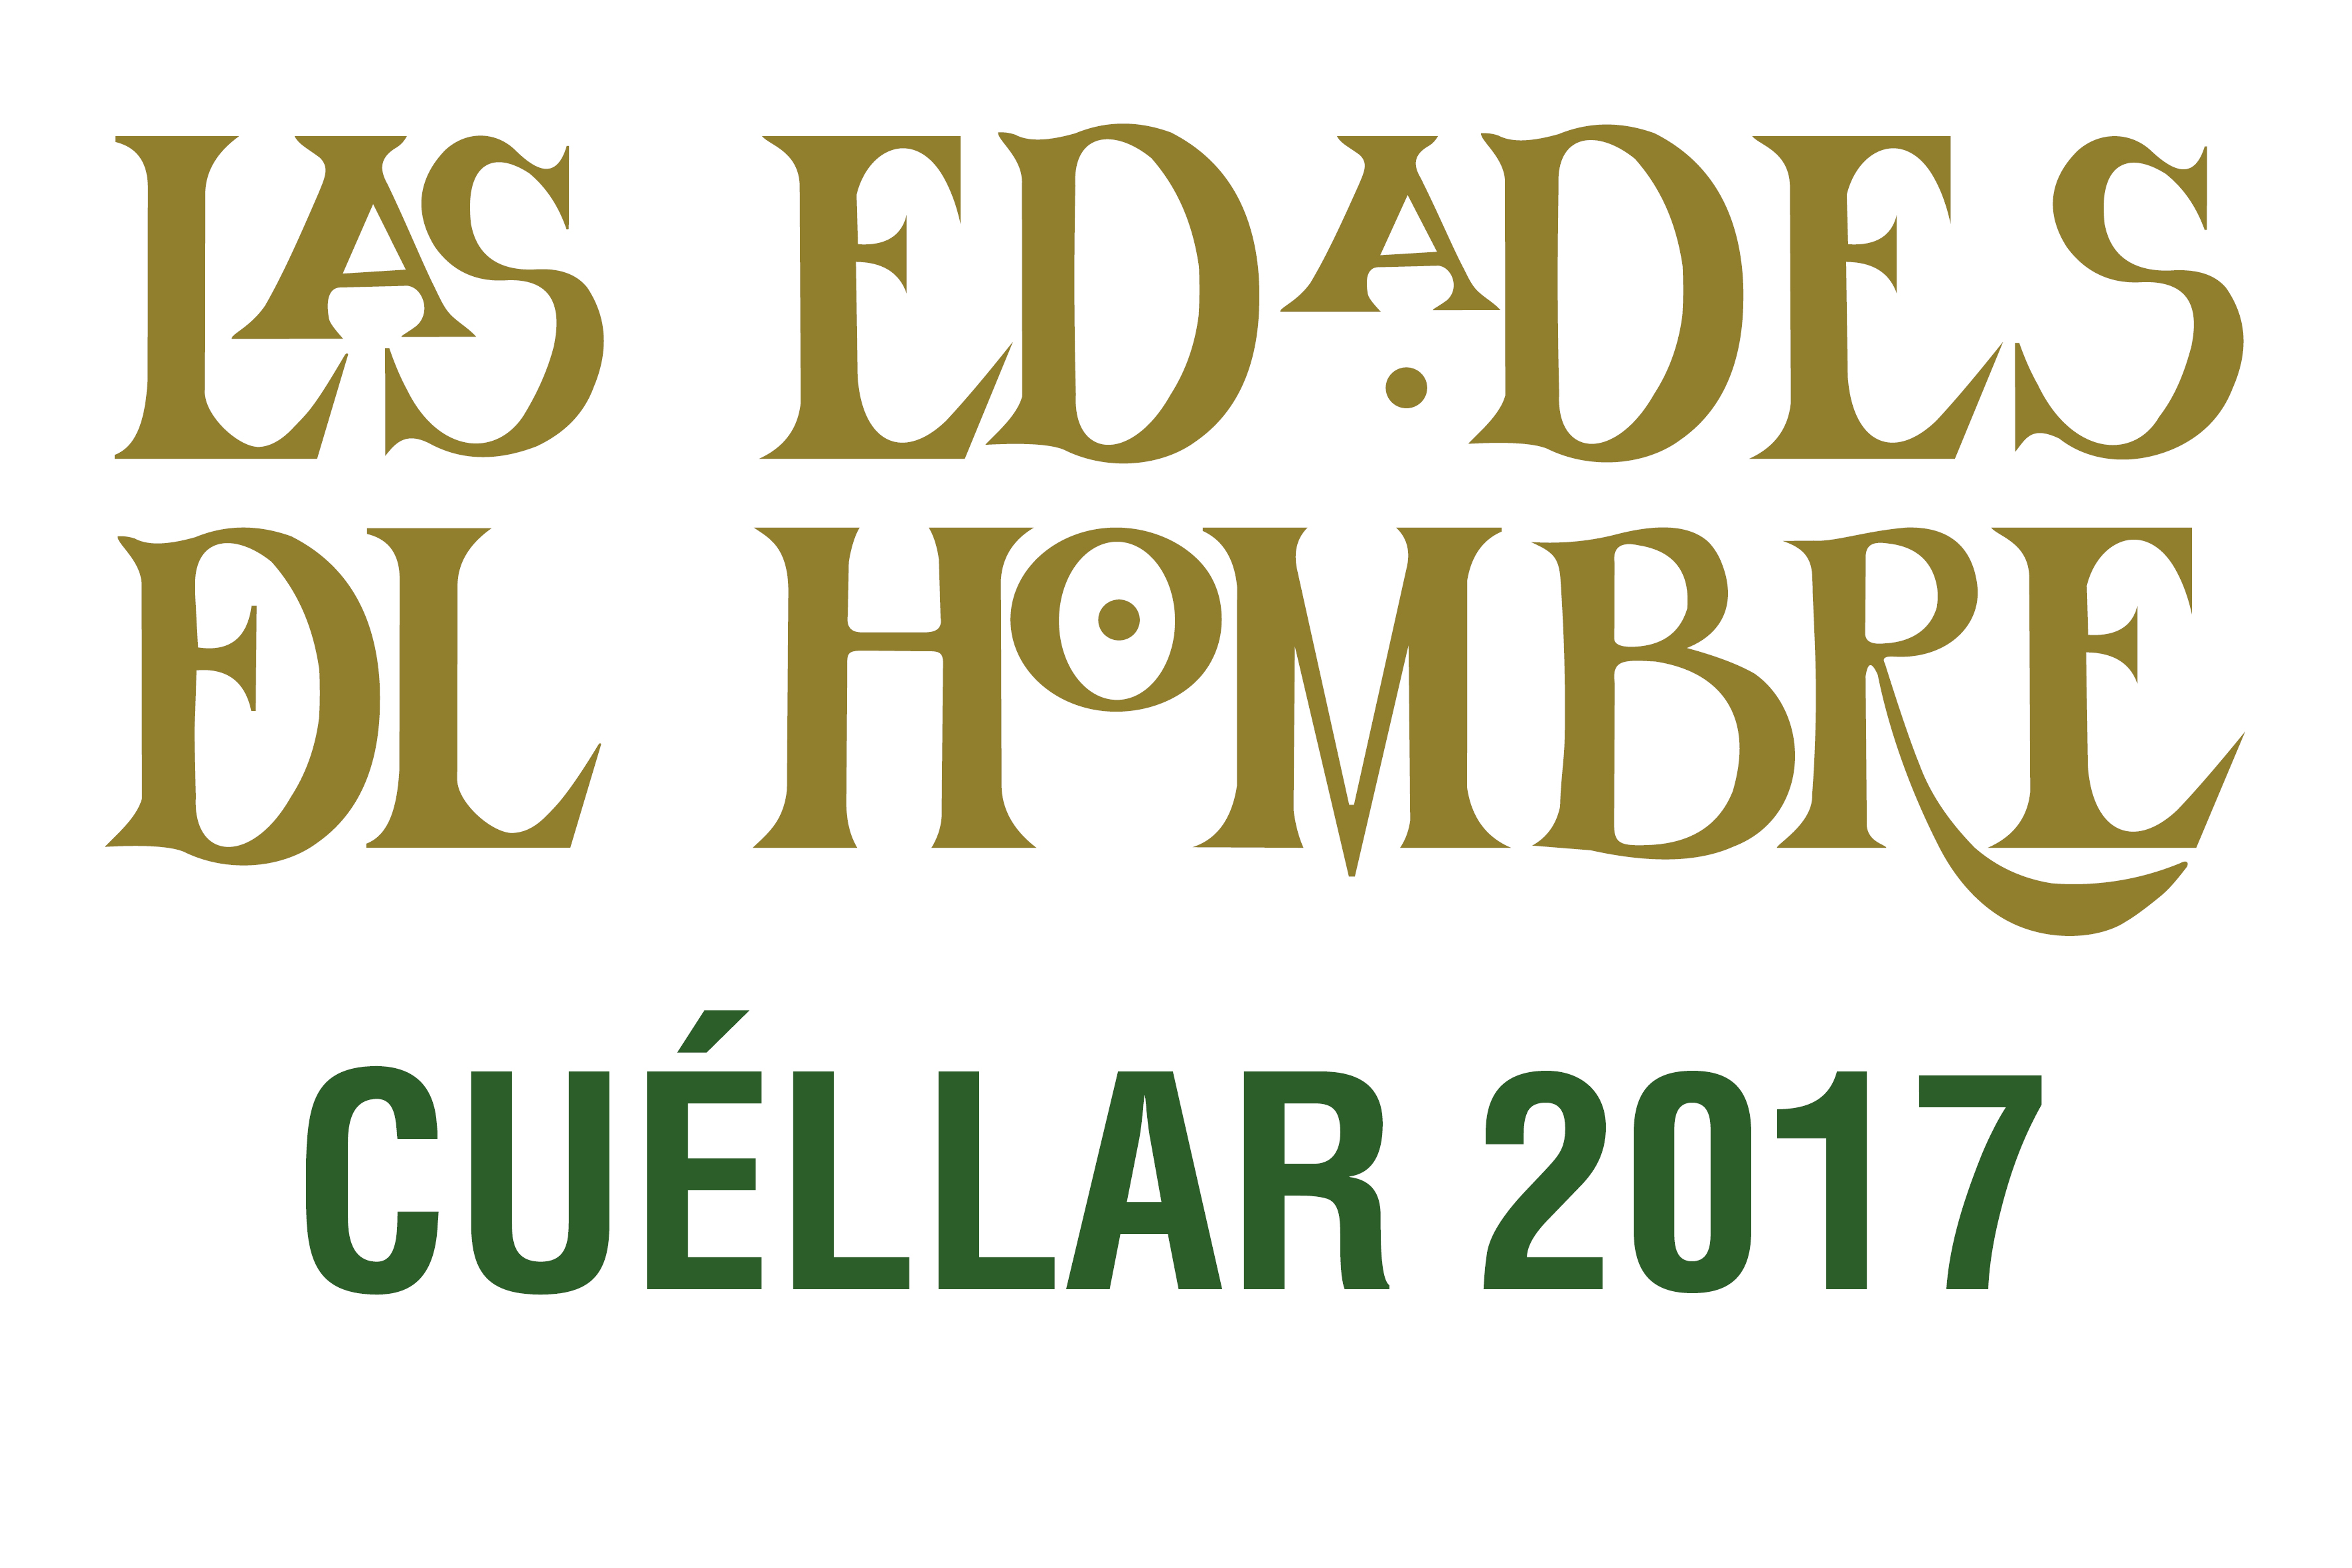 Cuéllar, logo di Las Edades del Hombre, 2017